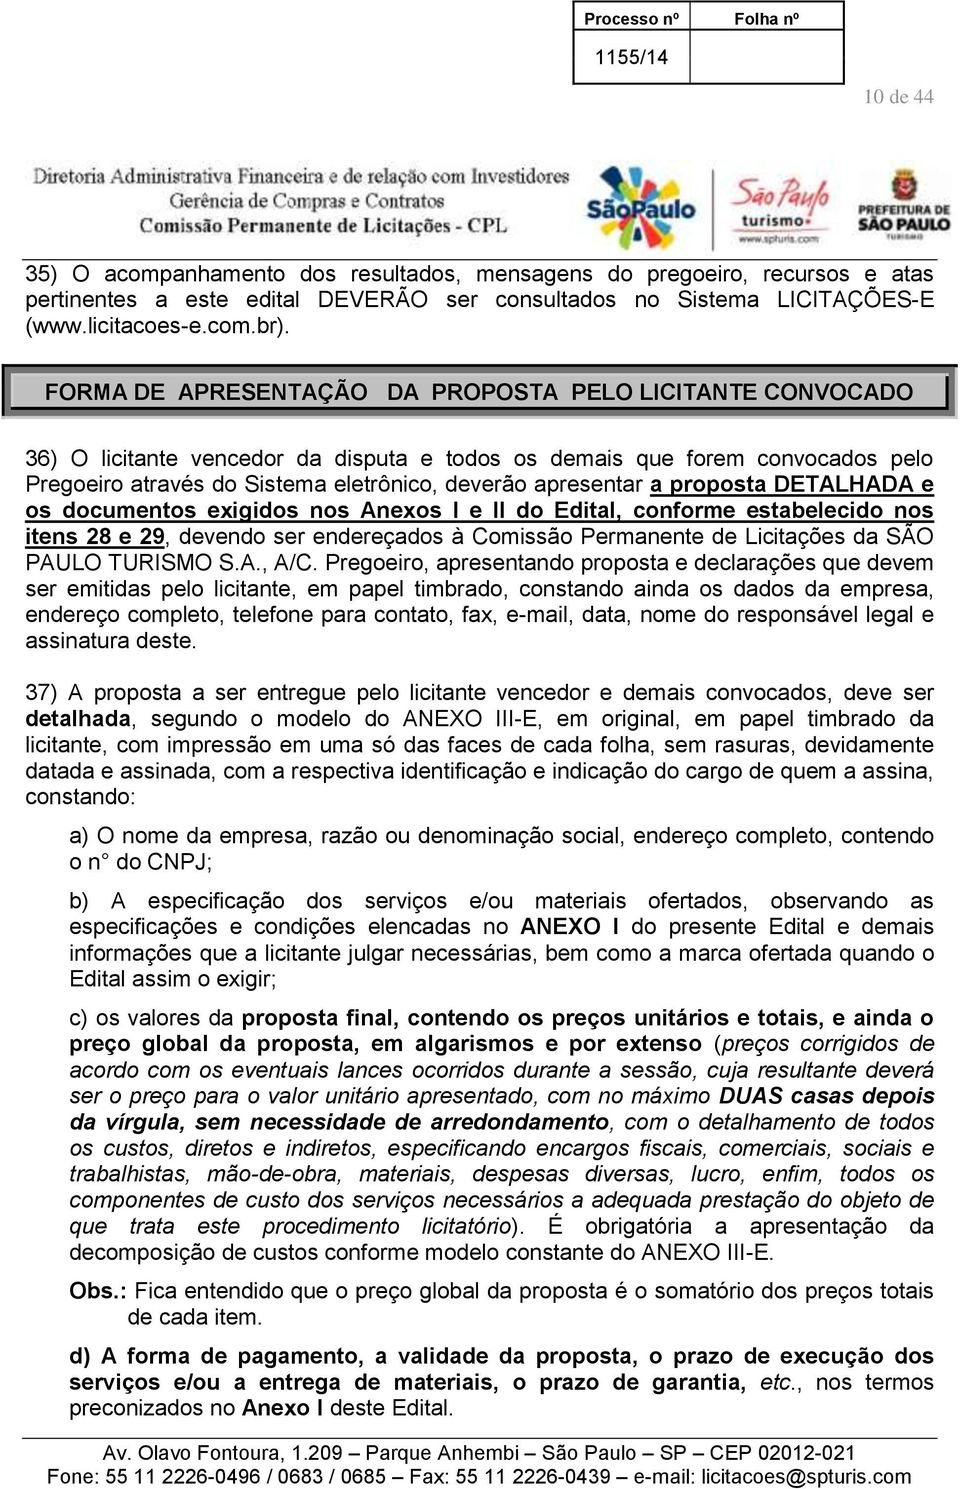 a proposta DETALHADA e os documentos exigidos nos Anexos I e II do Edital, conforme estabelecido nos itens 28 e 29, devendo ser endereçados à Comissão Permanente de Licitações da SÃO PAULO TURISMO S.